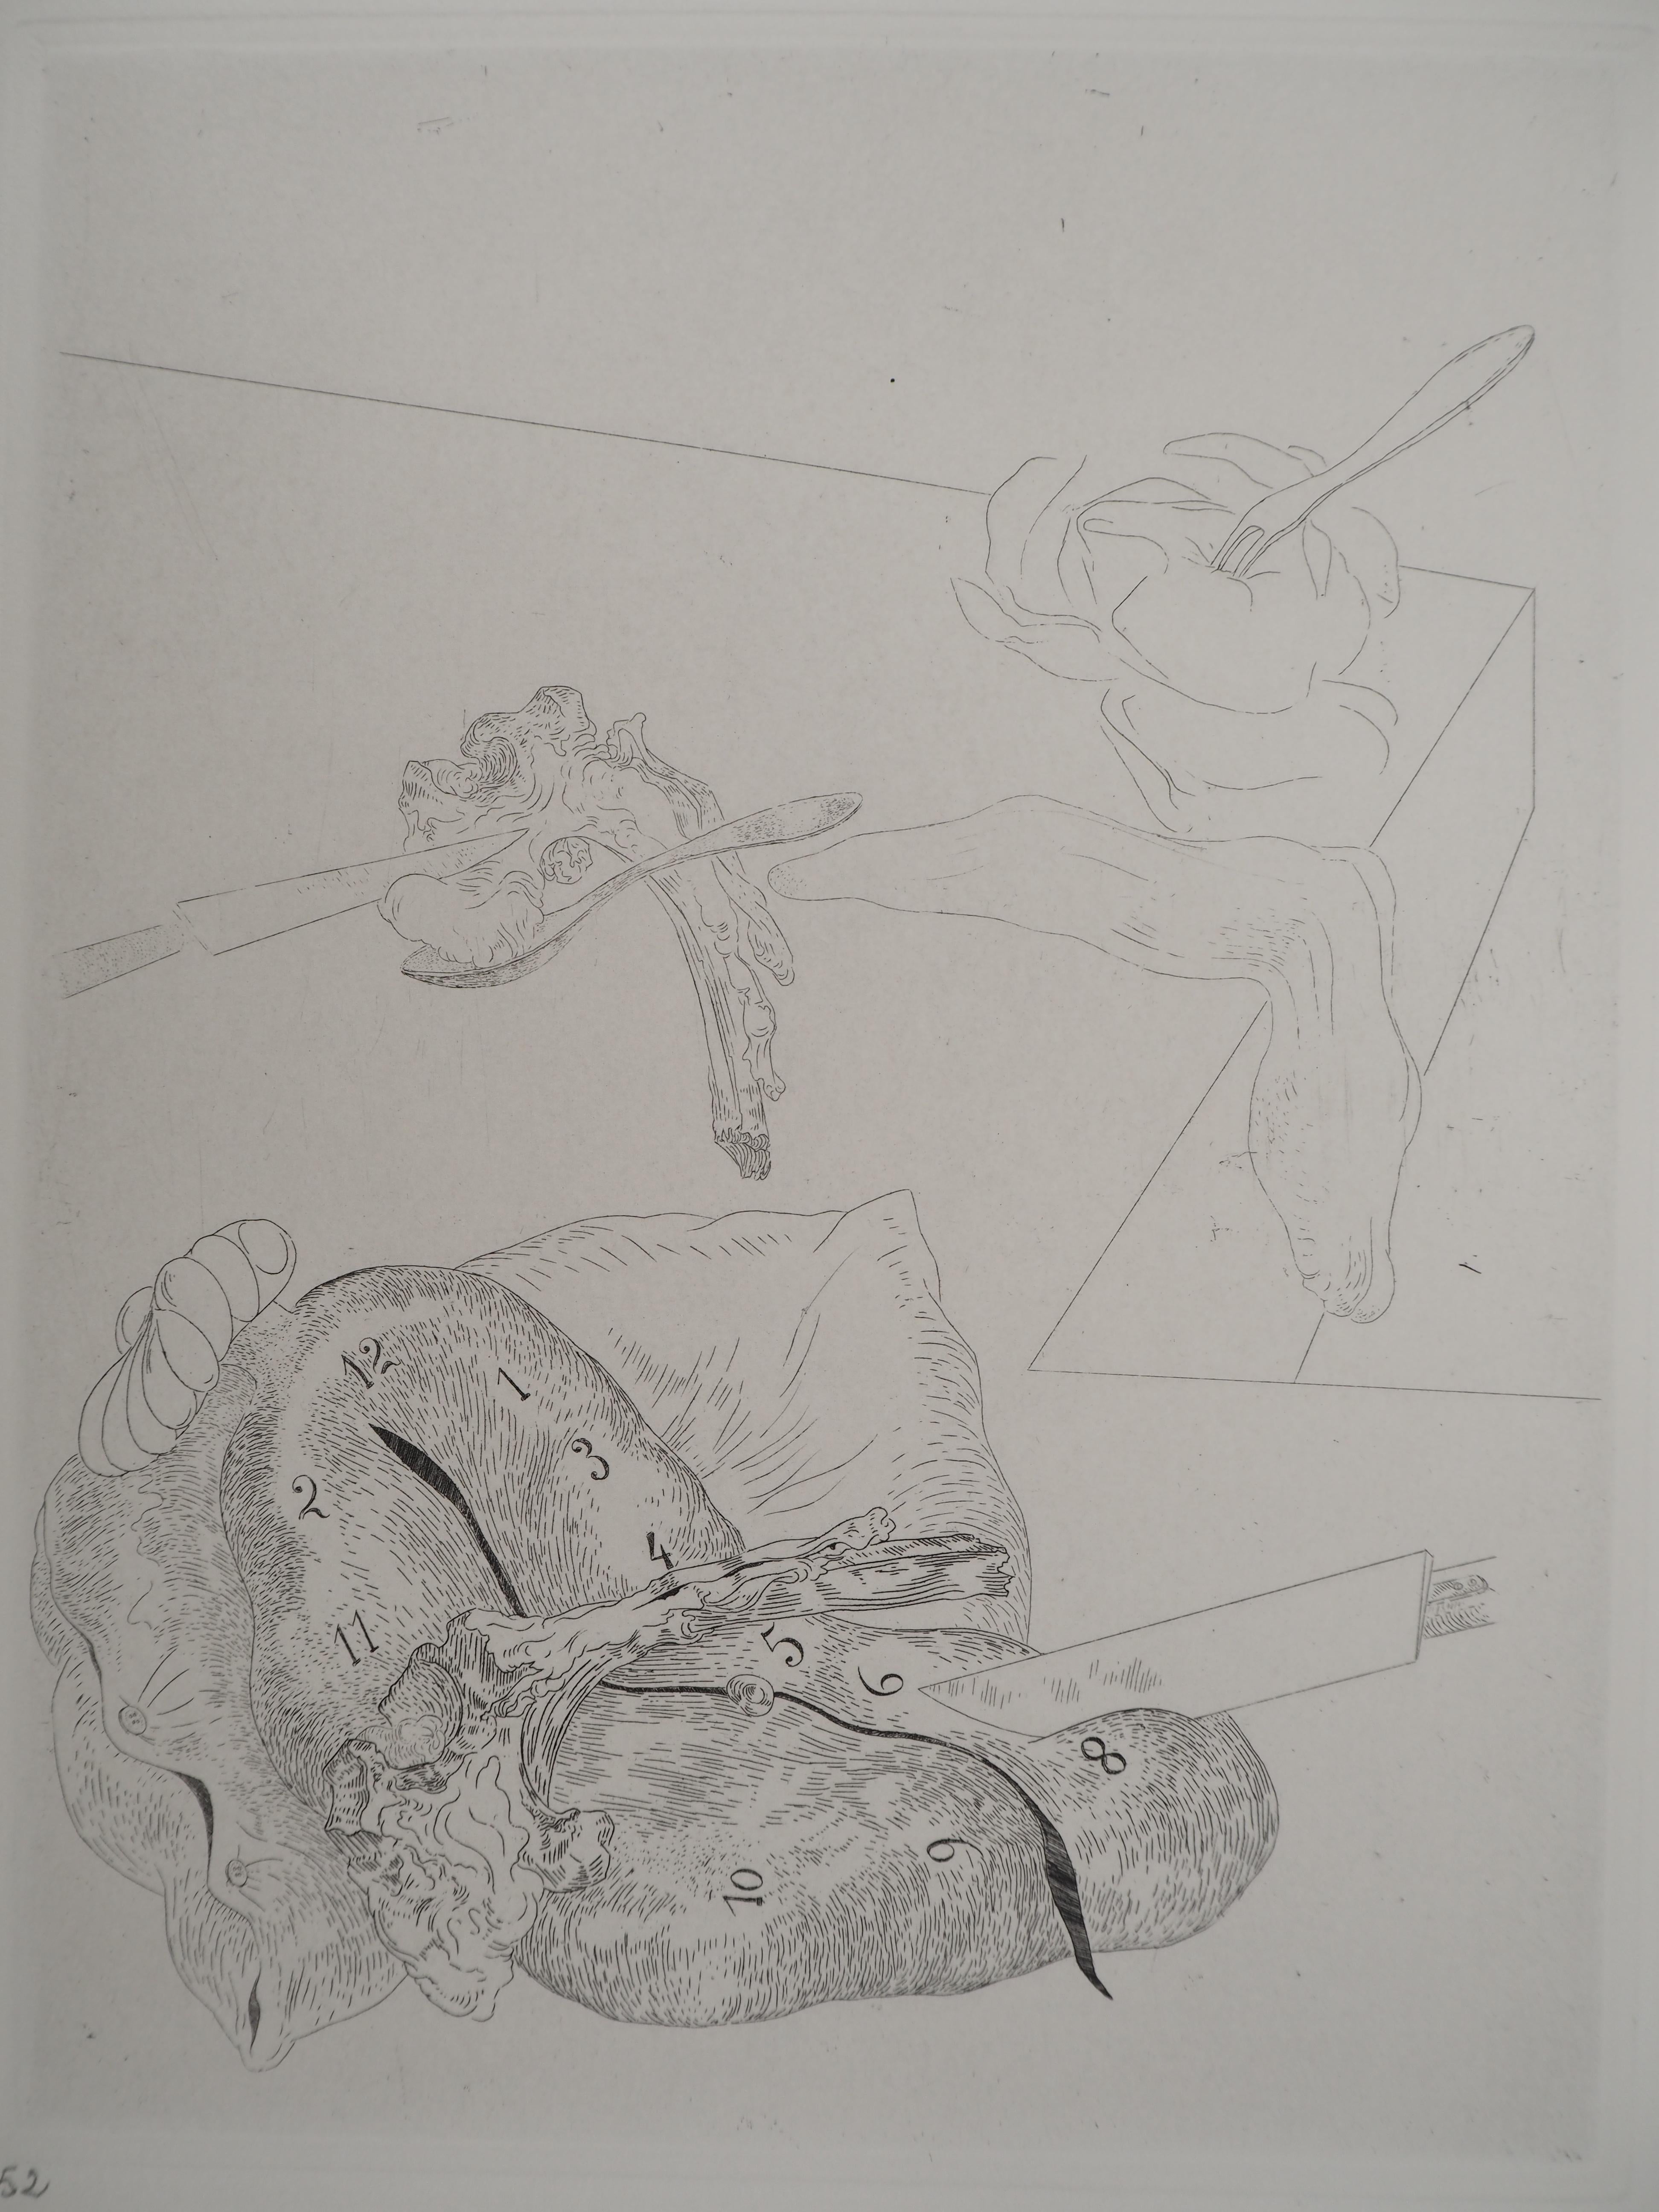 Salvador Dali
Time Sleeping, 1975

Original-Radierung 
Mit Bleistift signiert 
Limitiert auf 100 Exemplare (hier nummeriert 52)
Auf Arches Vellum  32,5 x 25 cm (ca. 12,7 x 9,8 Zoll)

REFERENZEN :
- Katalog raisonne Feld #34-2
- Gesamtkatalog Michler